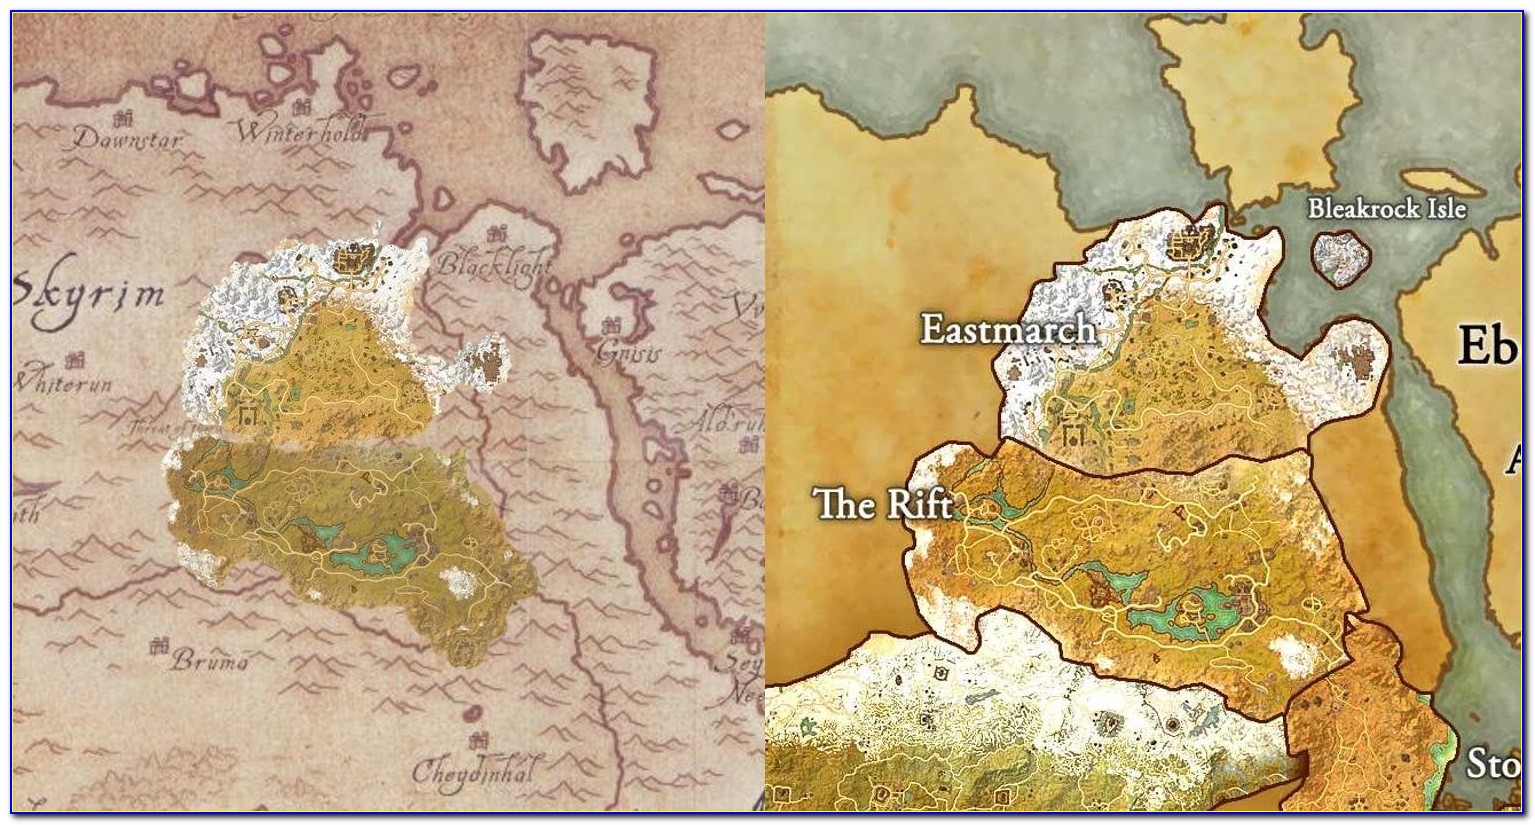 Elder Scrolls Online Map Comparison